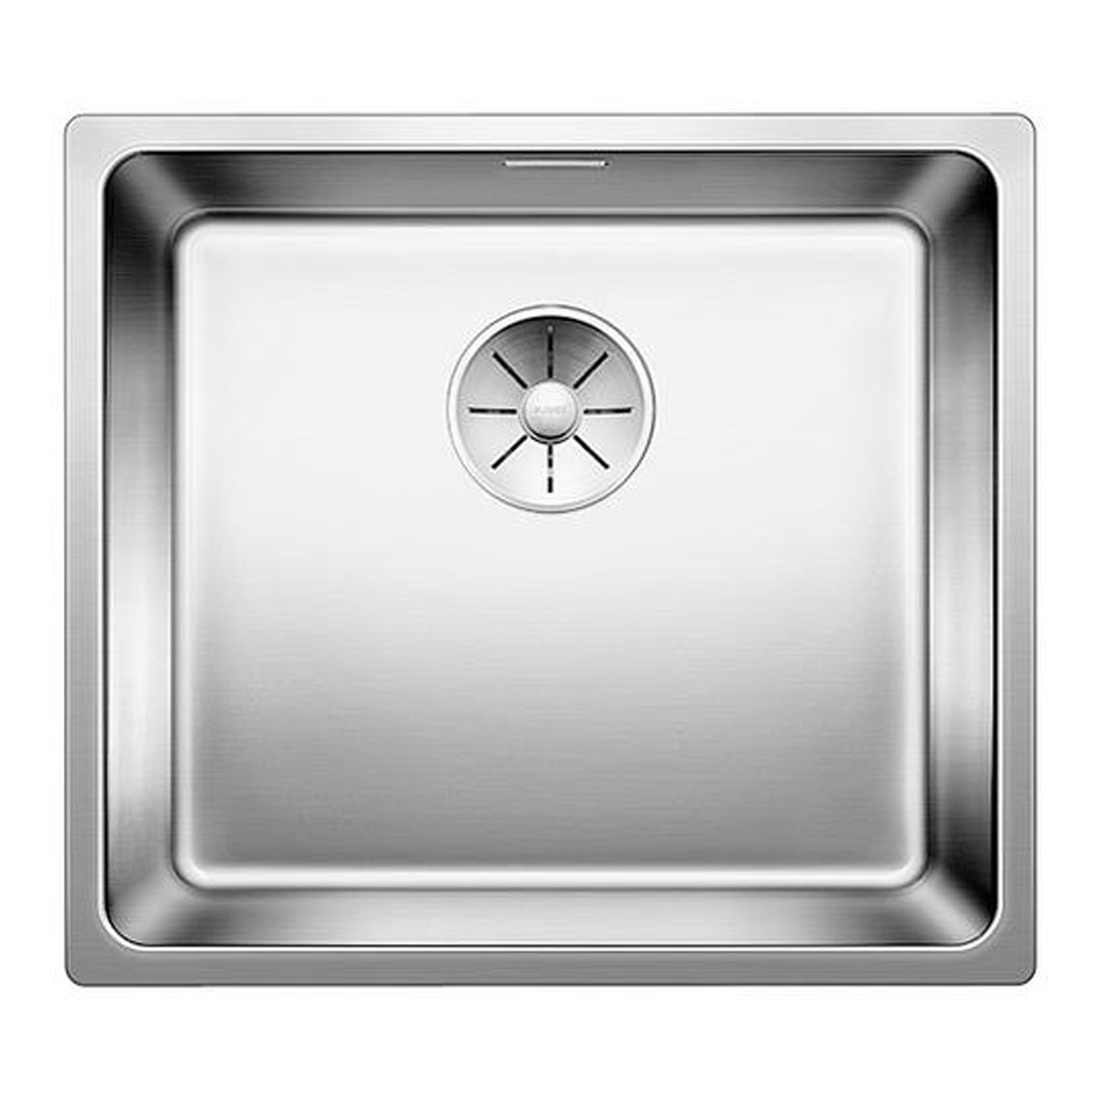 Кухонная мойка Blanco Andano 450-IF полированная сталь кухонная мойка franke box center bwx 220 54 27 tl нержавеющая сталь